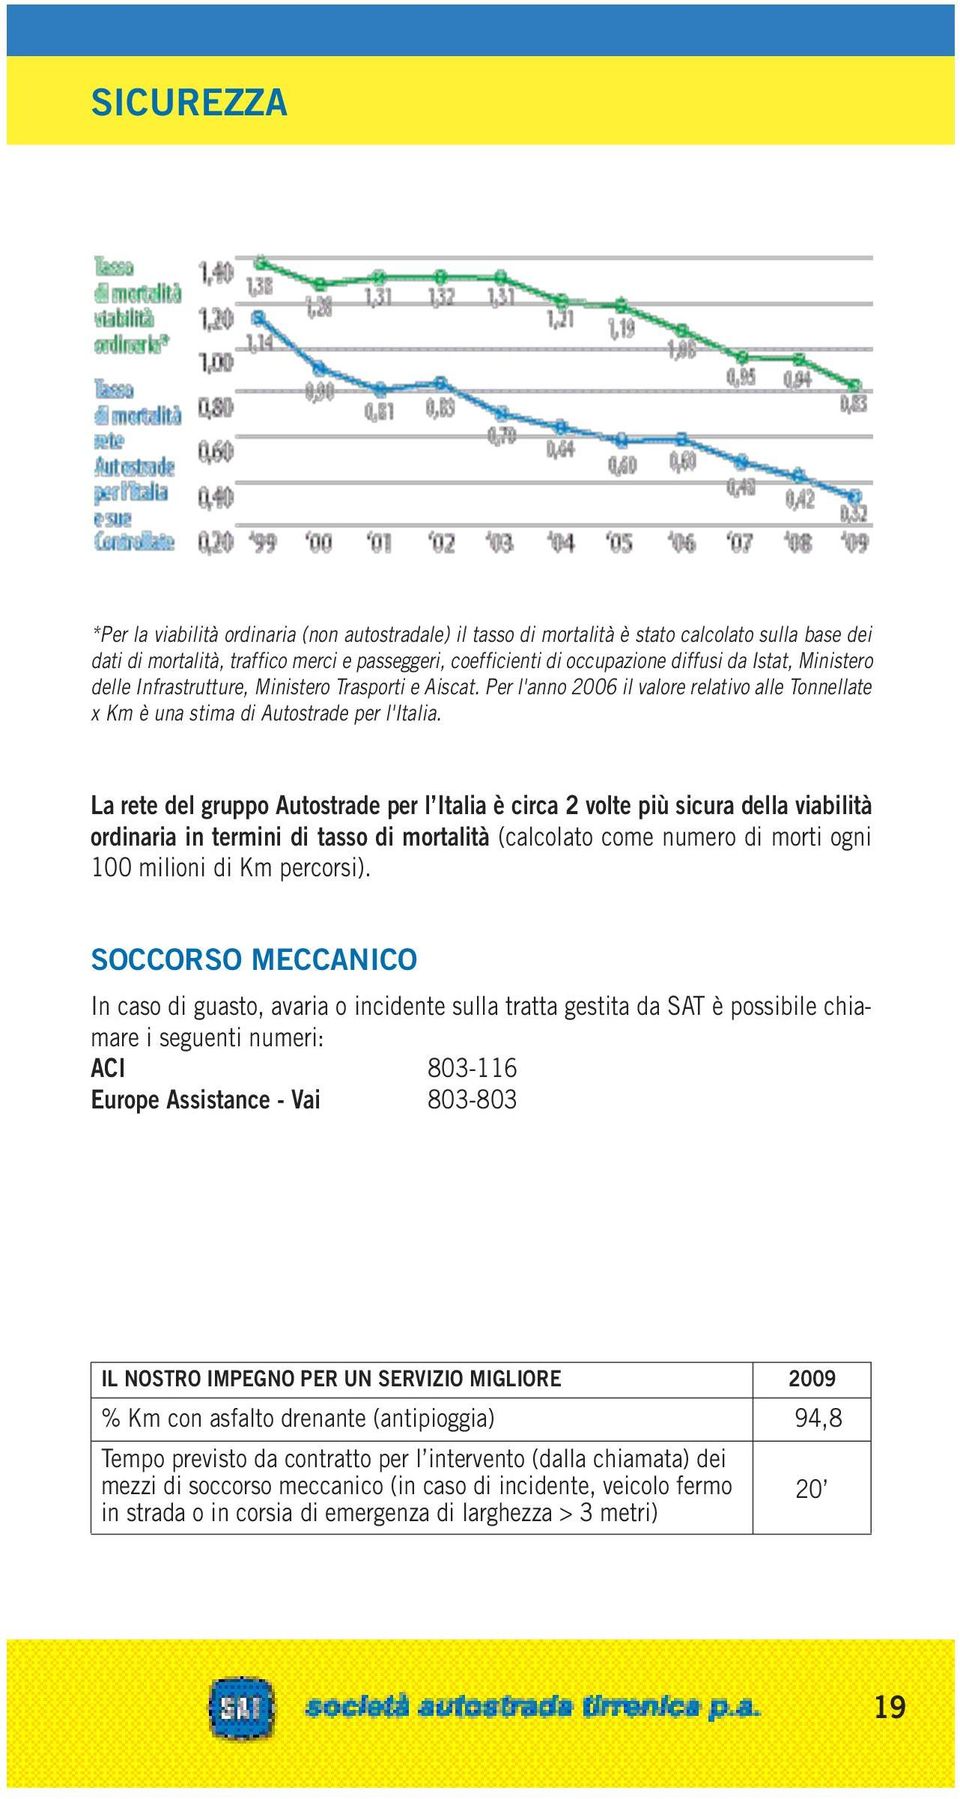 La rete del gruppo Autostrade per l Italia è circa 2 volte più sicura della viabilità ordinaria in termini di tasso di mortalità (calcolato come numero di morti ogni 100 milioni di Km percorsi).